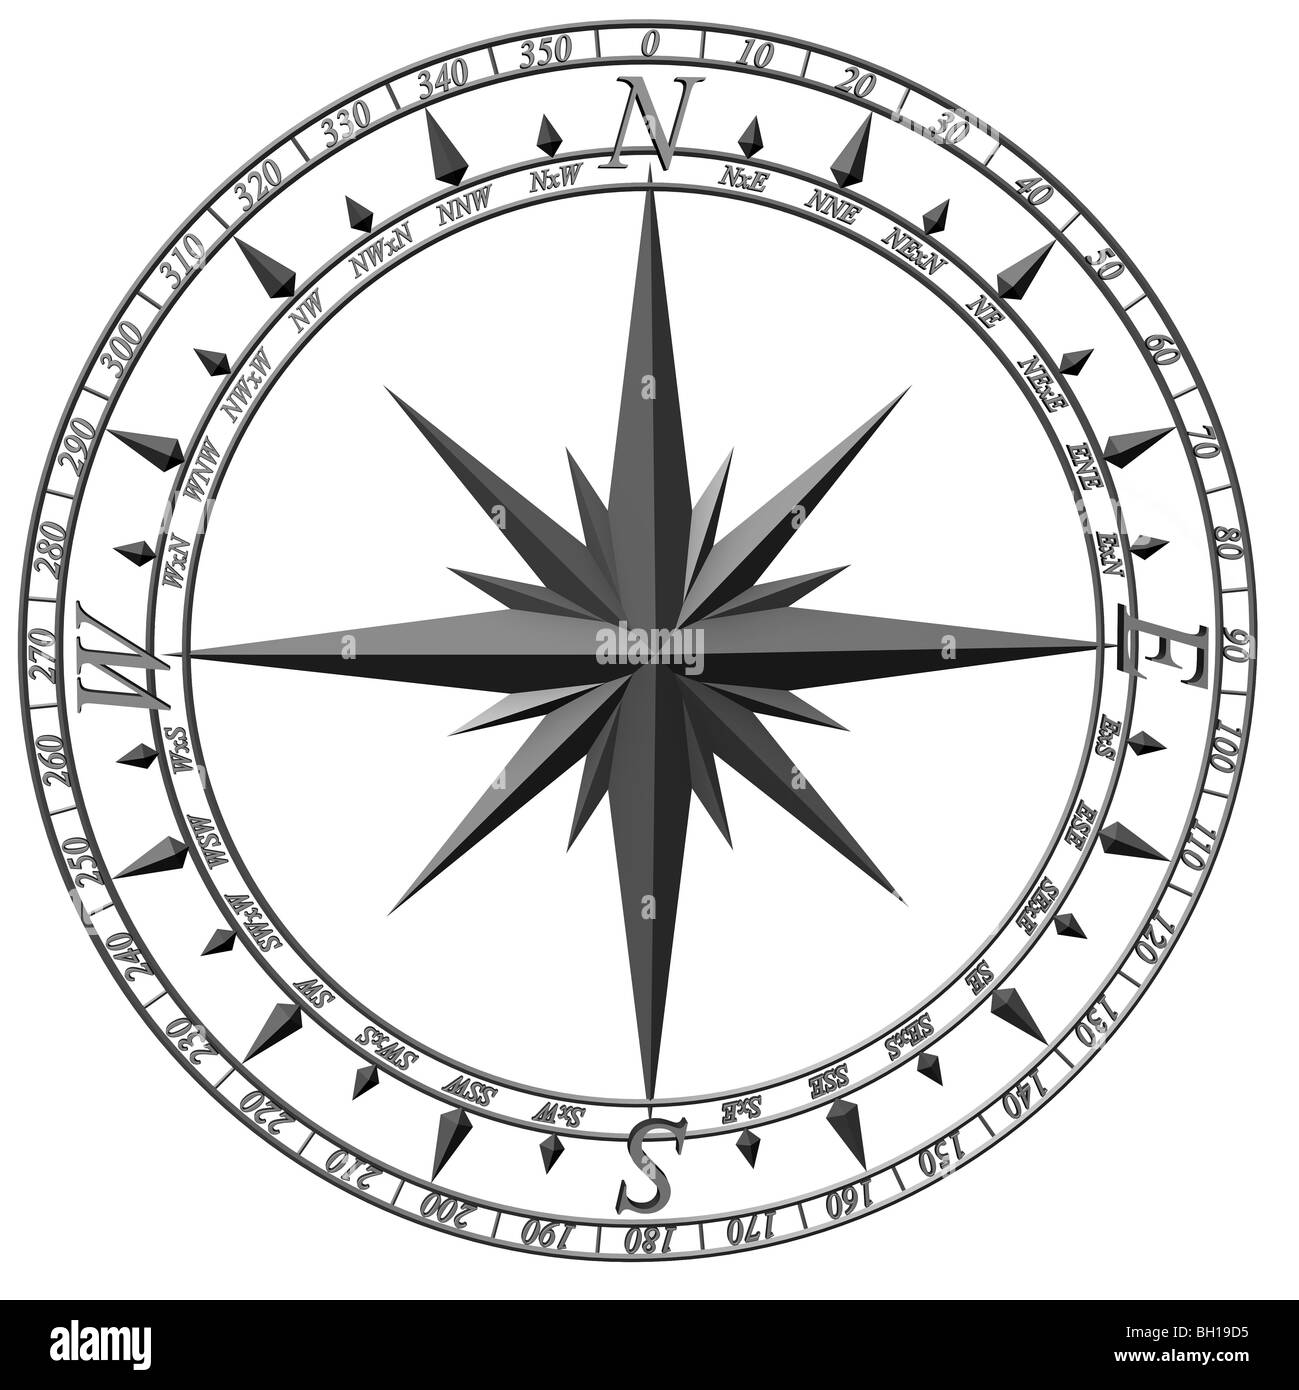 3D-Darstellung der Kompassrose zeigt die vier Himmelsrichtungen, die vier intercardinal Richtungen, und acht weitere Abteilungen. Ausschneiden. Stockfoto